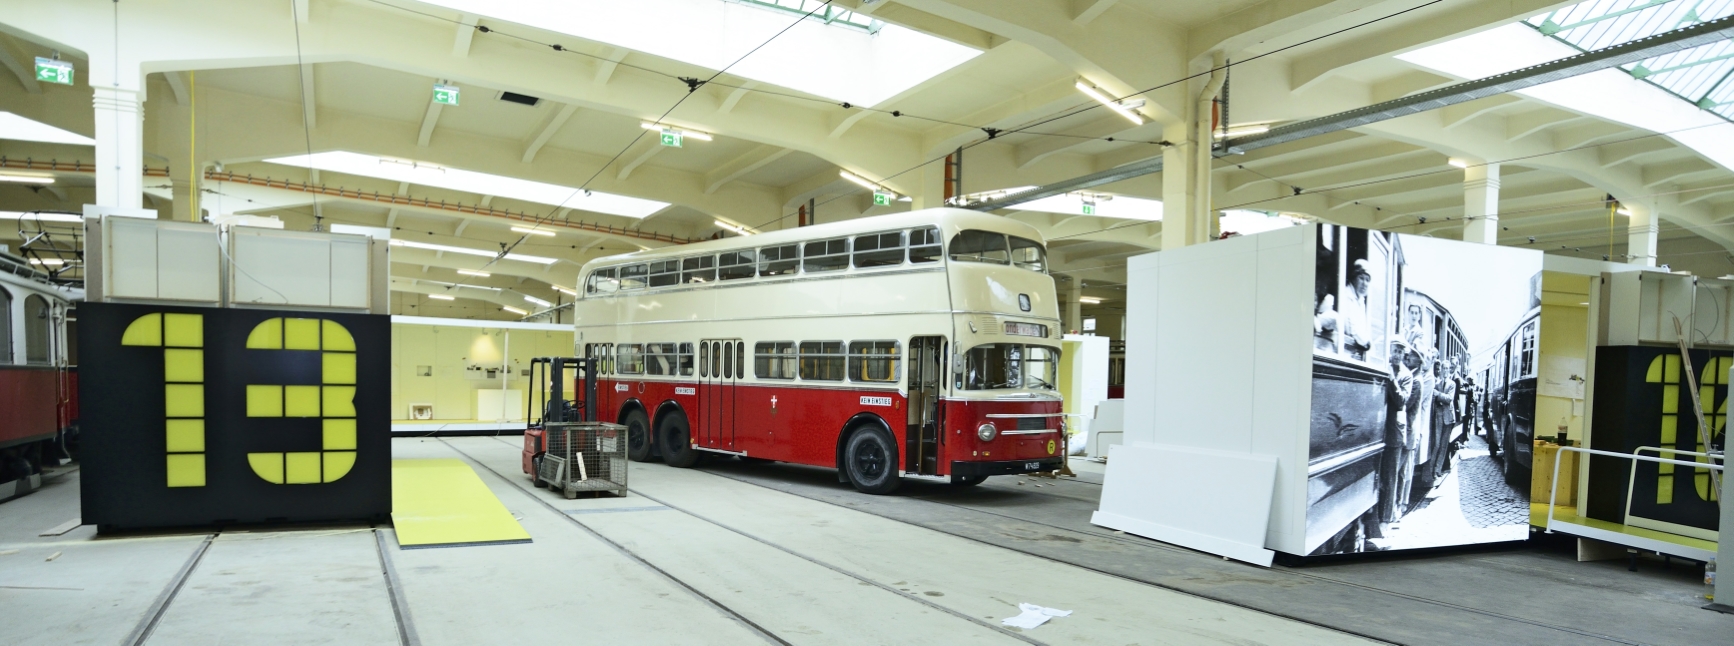 Endspurt beim Aufbau der Ausstellung im neuen Verkehrsmuseum Remise, das am 13. September 2014 eröffnet wird.